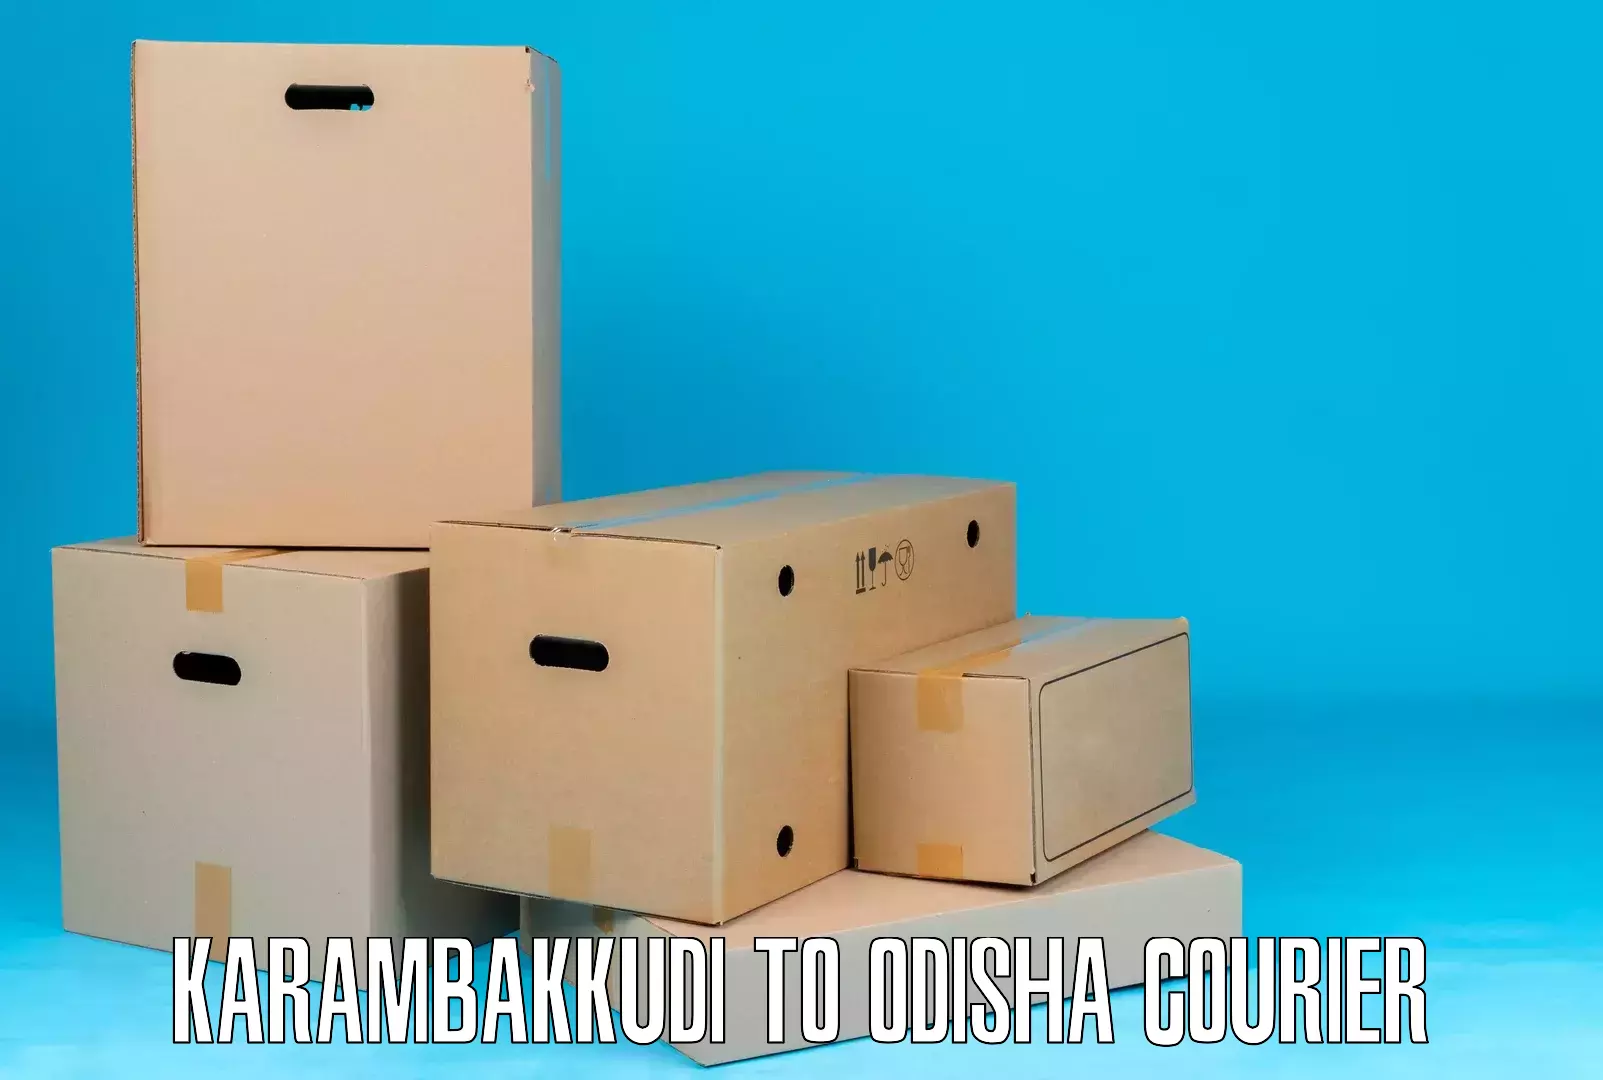 Efficient parcel tracking Karambakkudi to Badagada